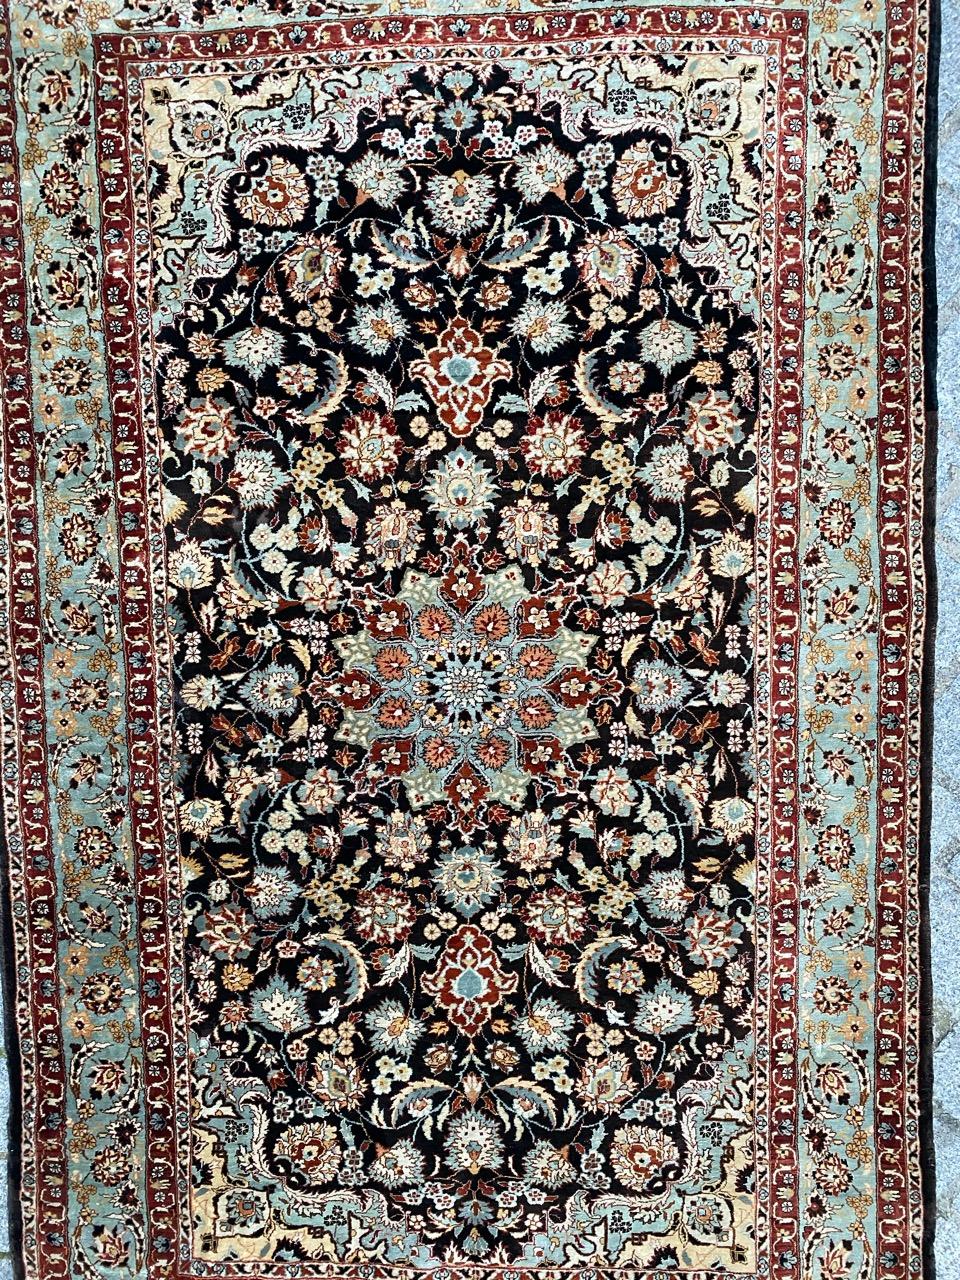 Sehr schöner Seidenteppich mit persischem Design und schönen Farben, komplett und fein handgeknüpft mit Seidensamt auf Seidenfond.

✨✨✨
